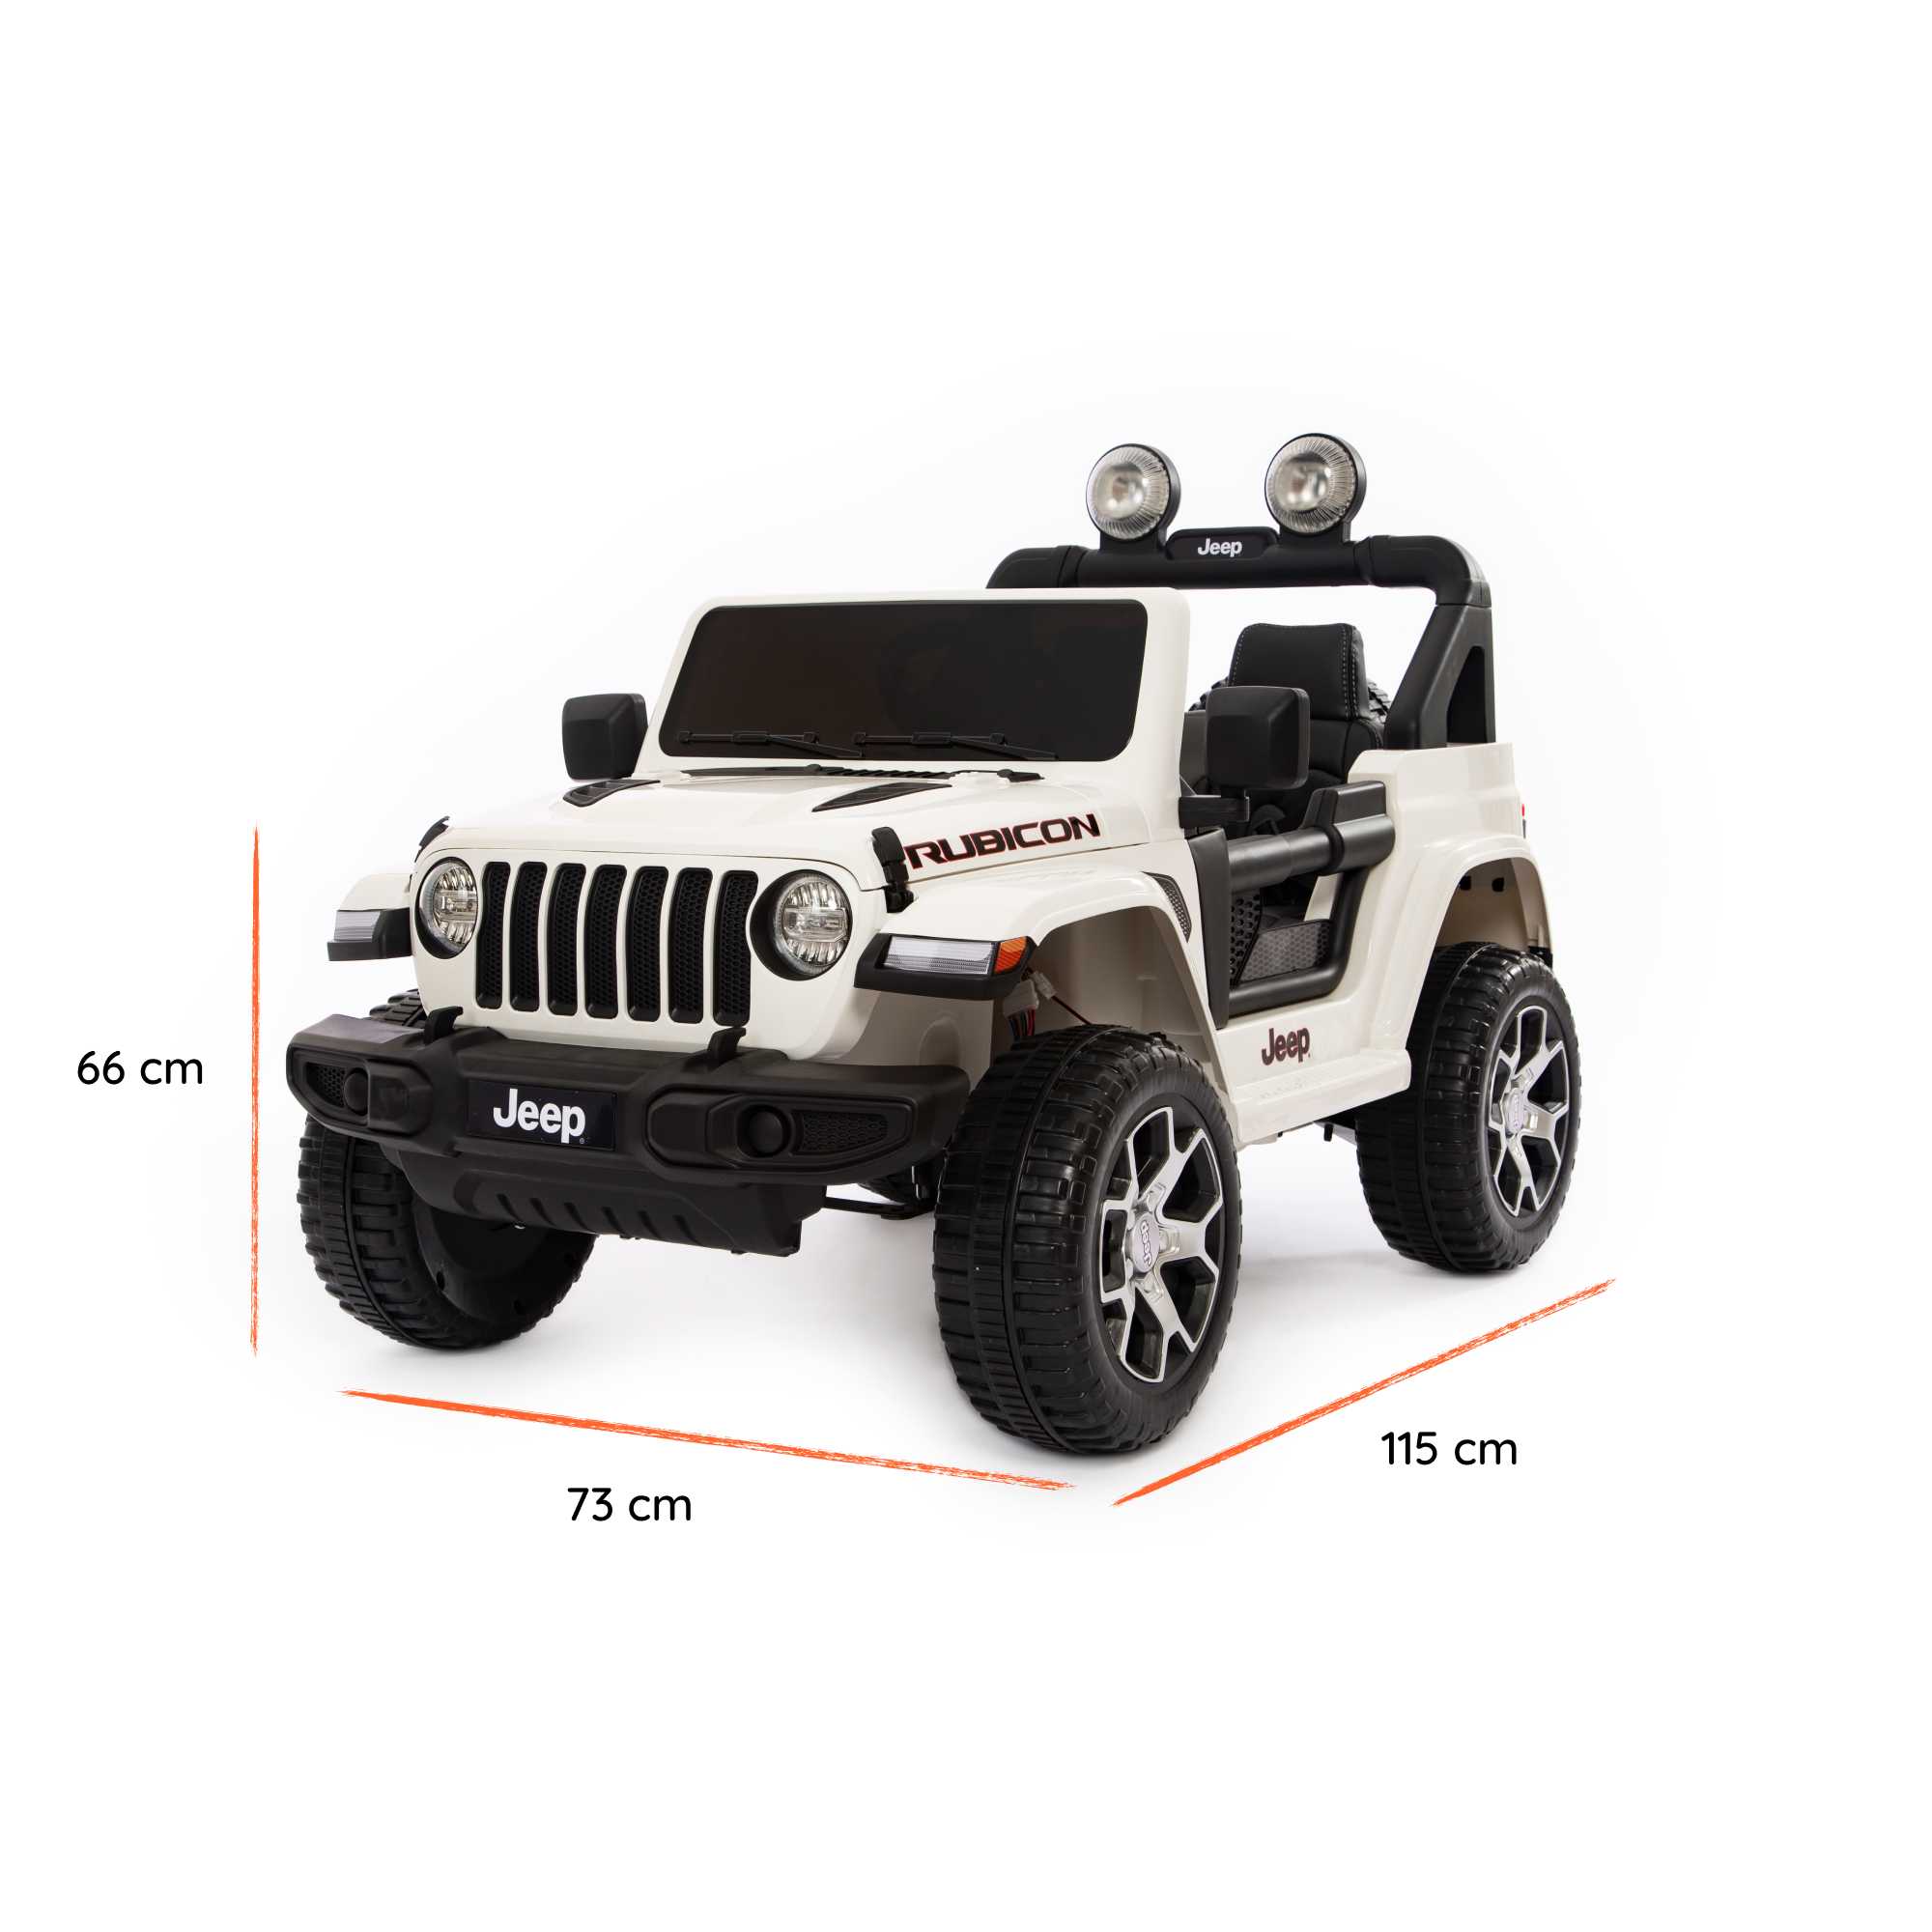 Jeep Wrangler Rubicon elétrico para crianças dimensões